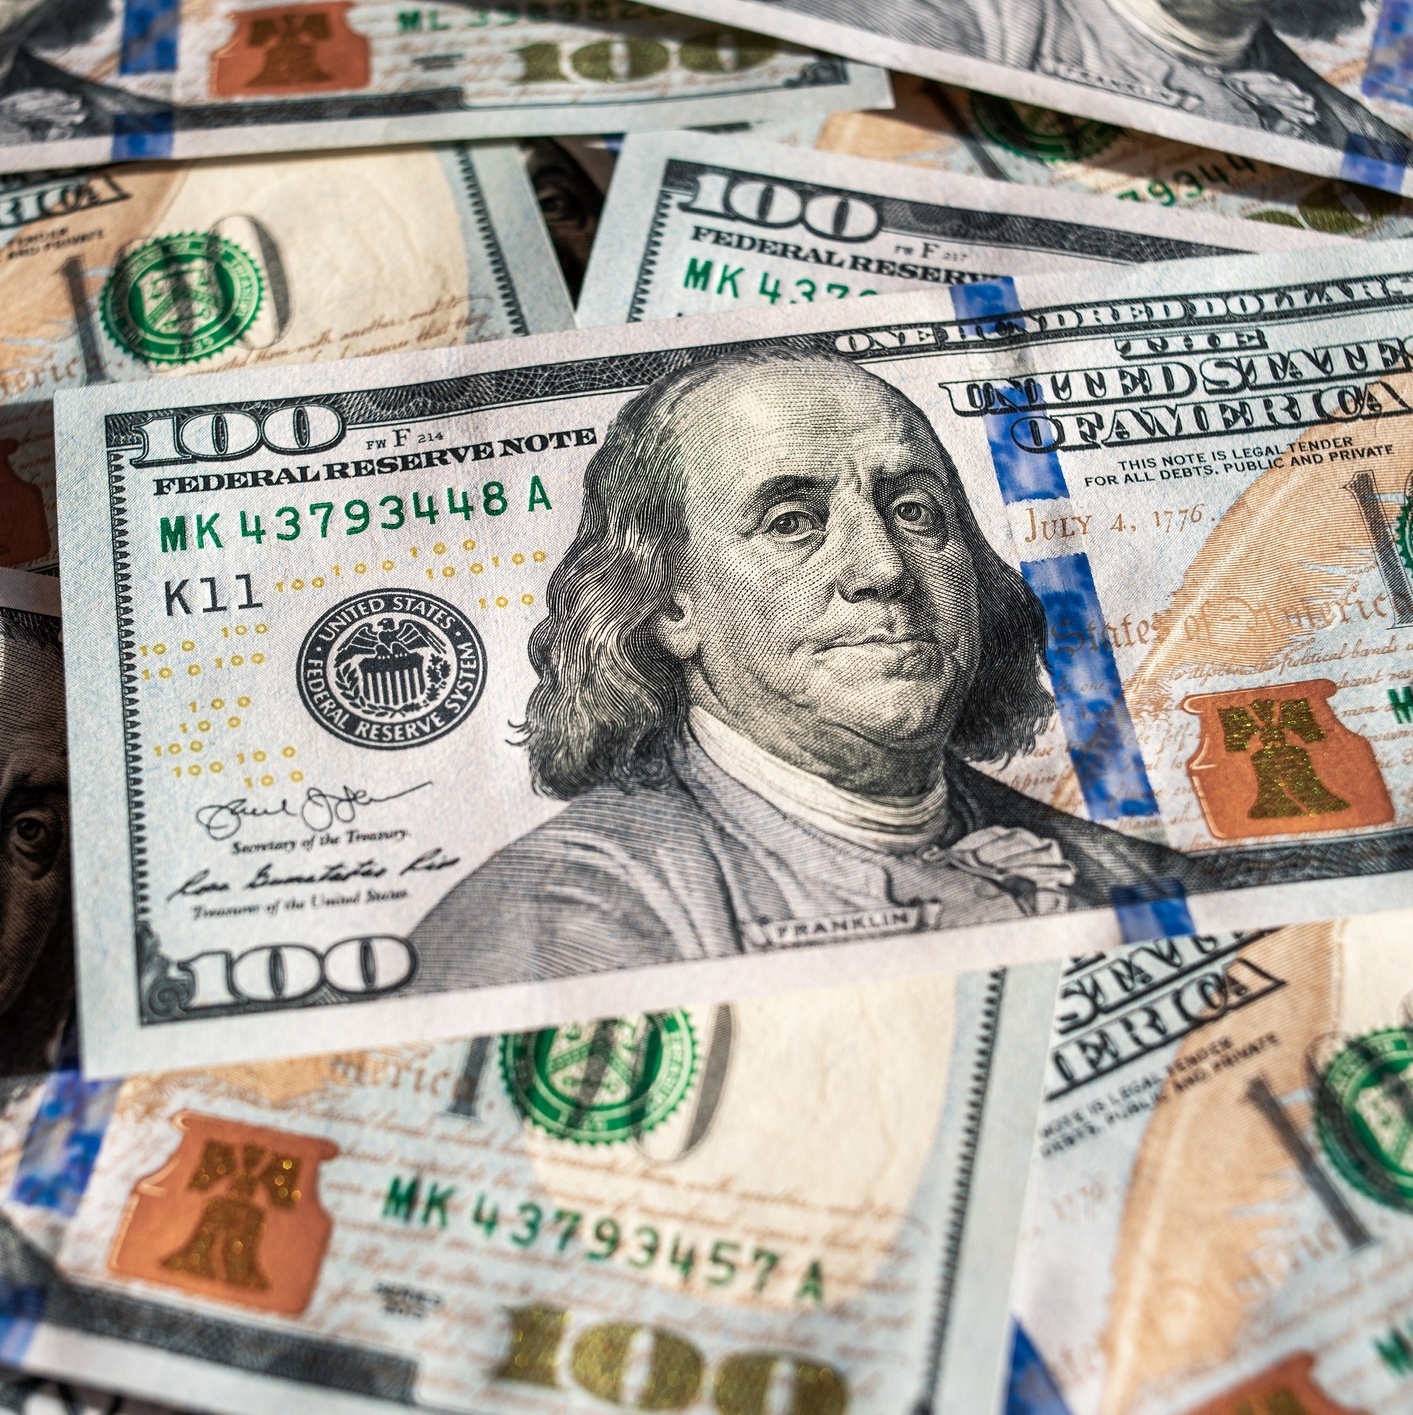 Estados Unidos não vão acabar com cédulas de dólar - 13/04/2023 - UOL  Notícias